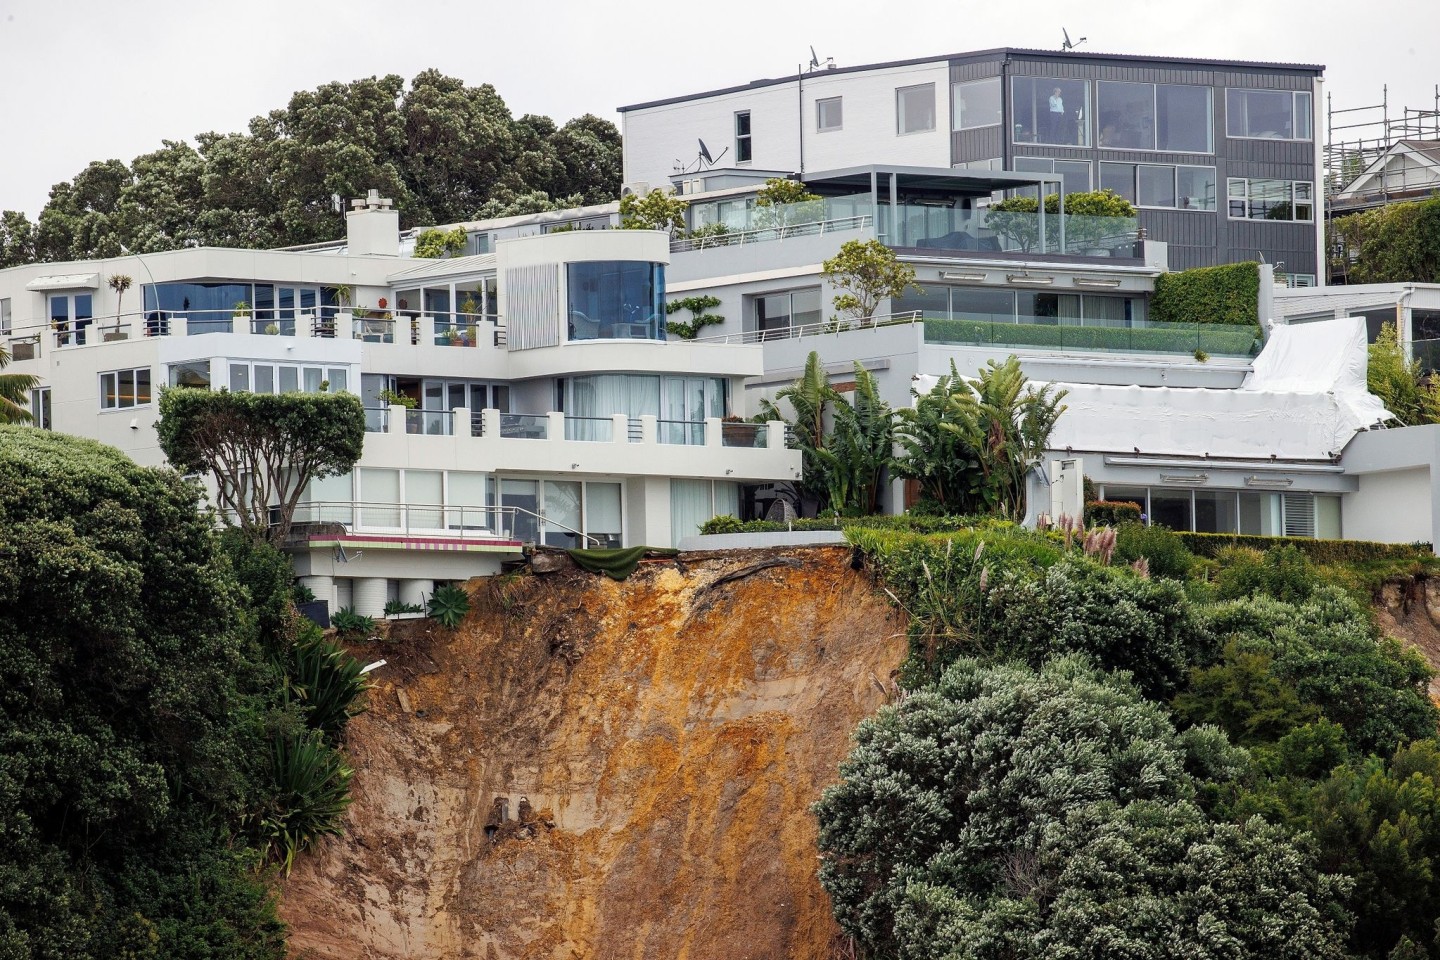 Ein Erdrutsch hat sich in der Nähe eines Hauses in Auckland gelöst, verursacht durch anhaltend nasses Wetter wegen Zyklon Gabrielle.